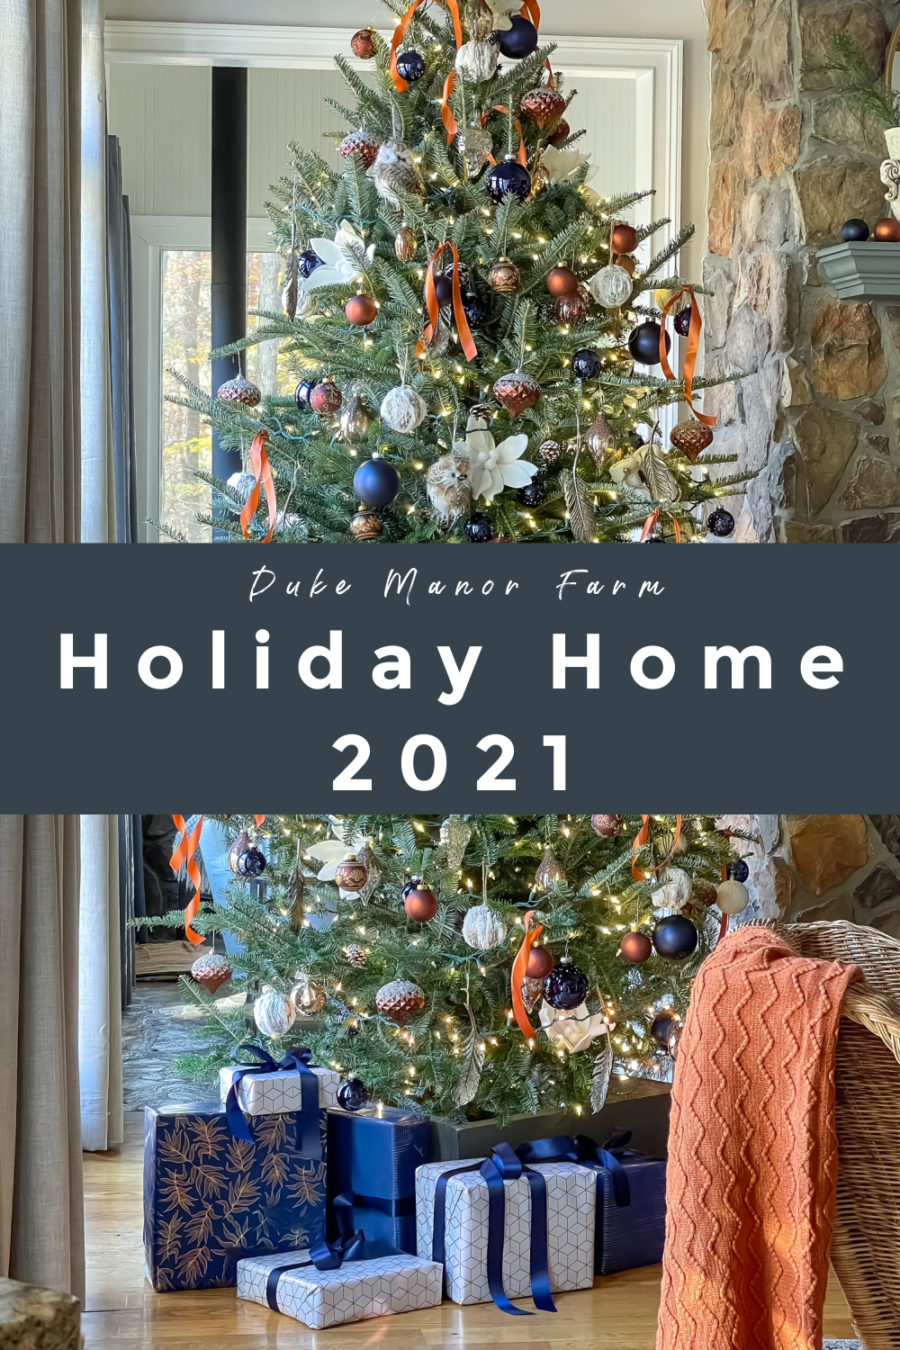 Duke Manor Farm Holiday Home 2021